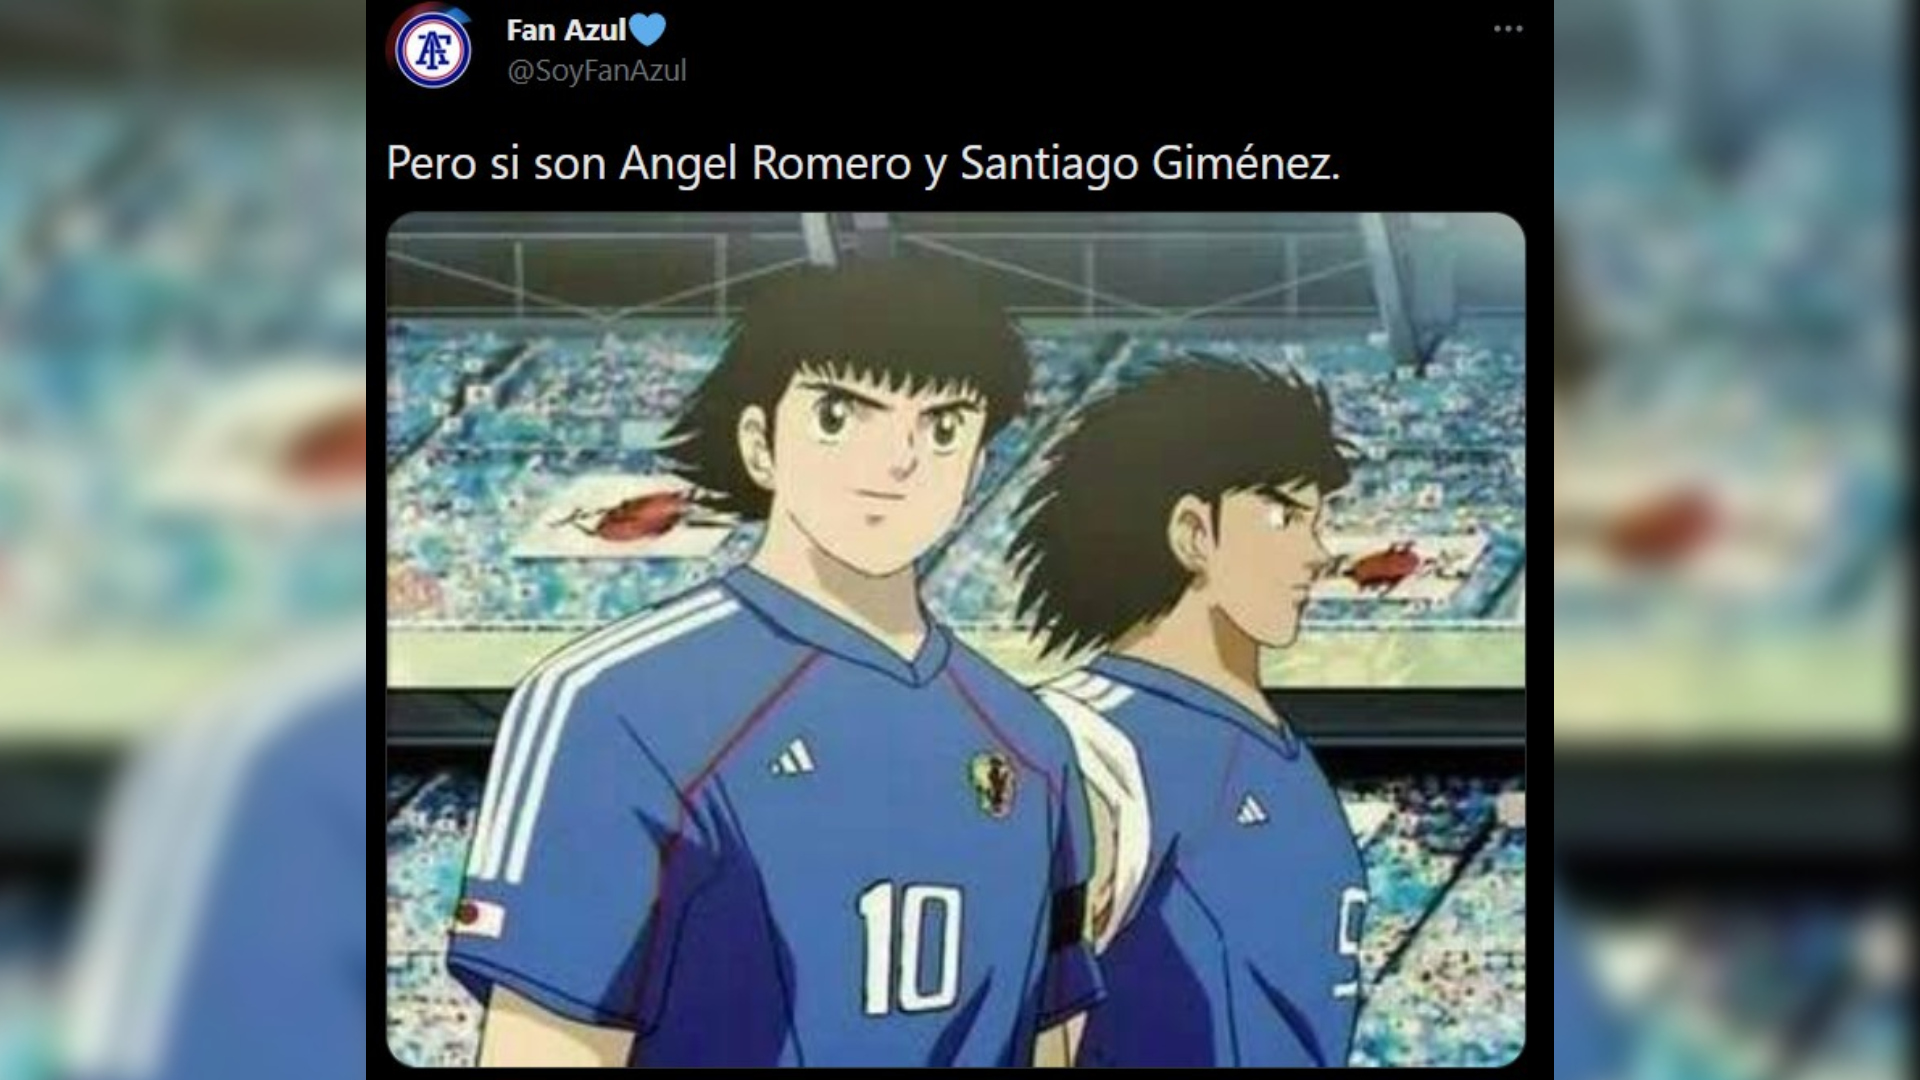 Los aficionados compararon a los delanteros del Cruz Azul con personajes del anime "Supercampeones". (Imagen:Twitter/@SoyFanAzul)